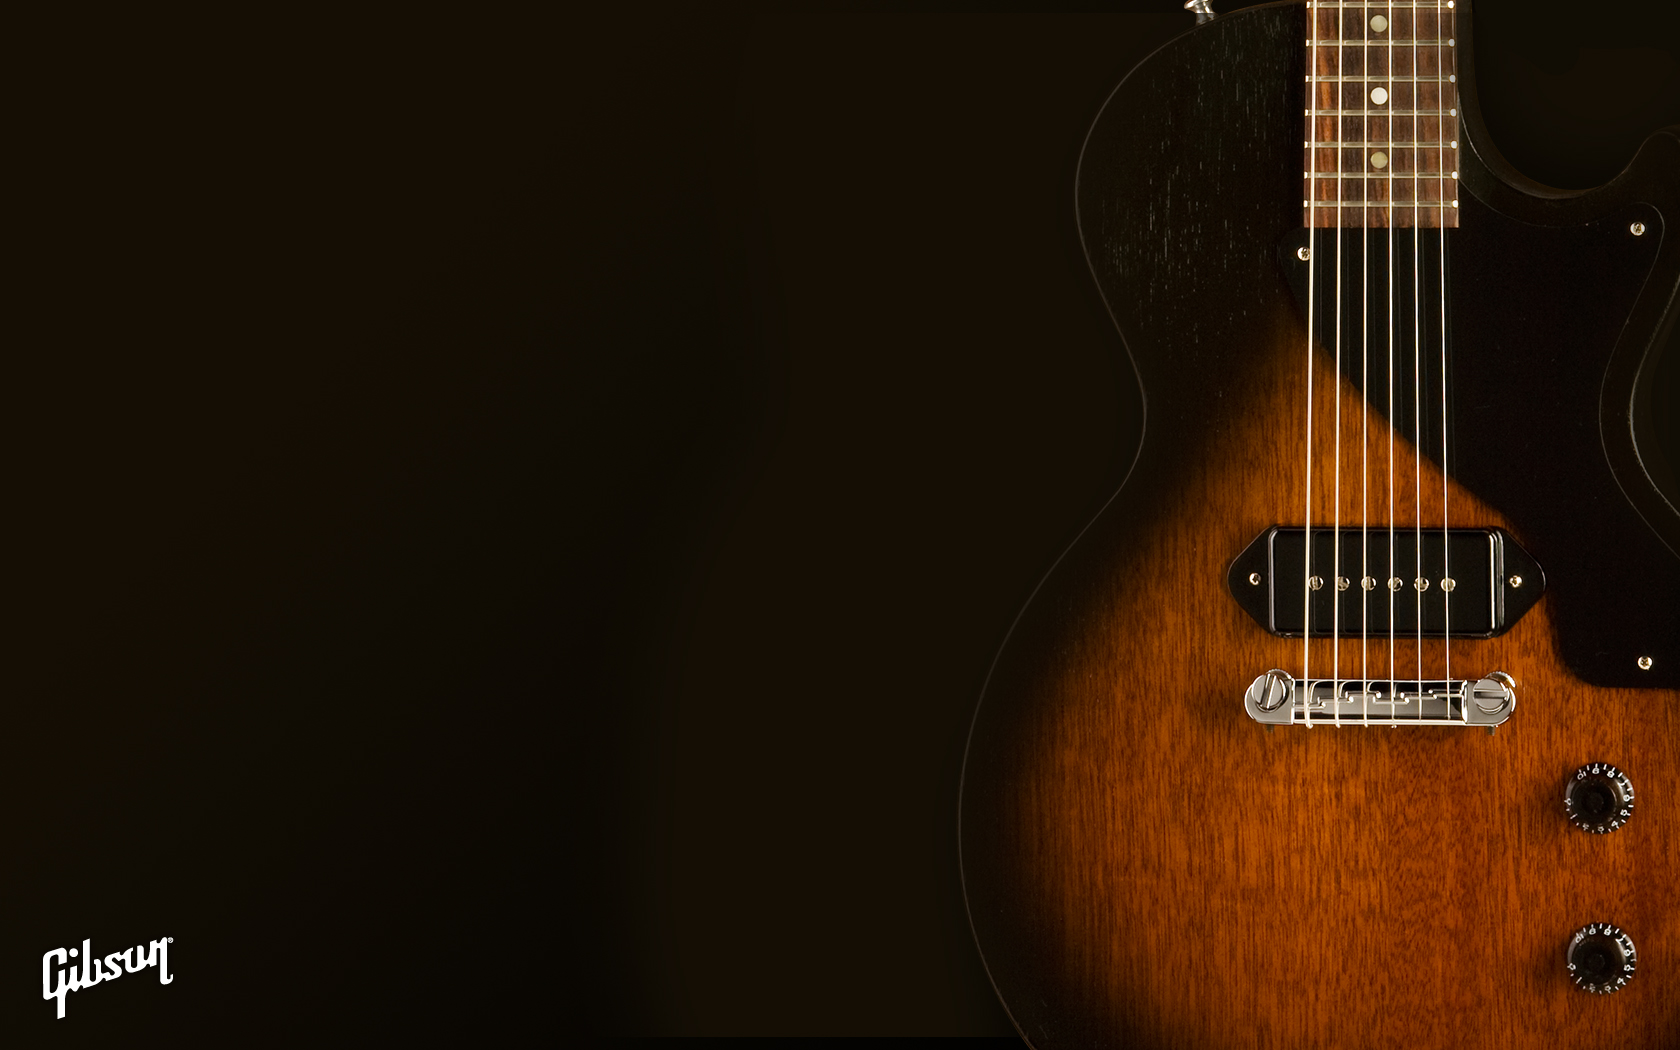 gibson iphone wallpaper,gitarre,musikinstrument,gezupfte saiteninstrumente,akustische gitarre,elektrische gitarre